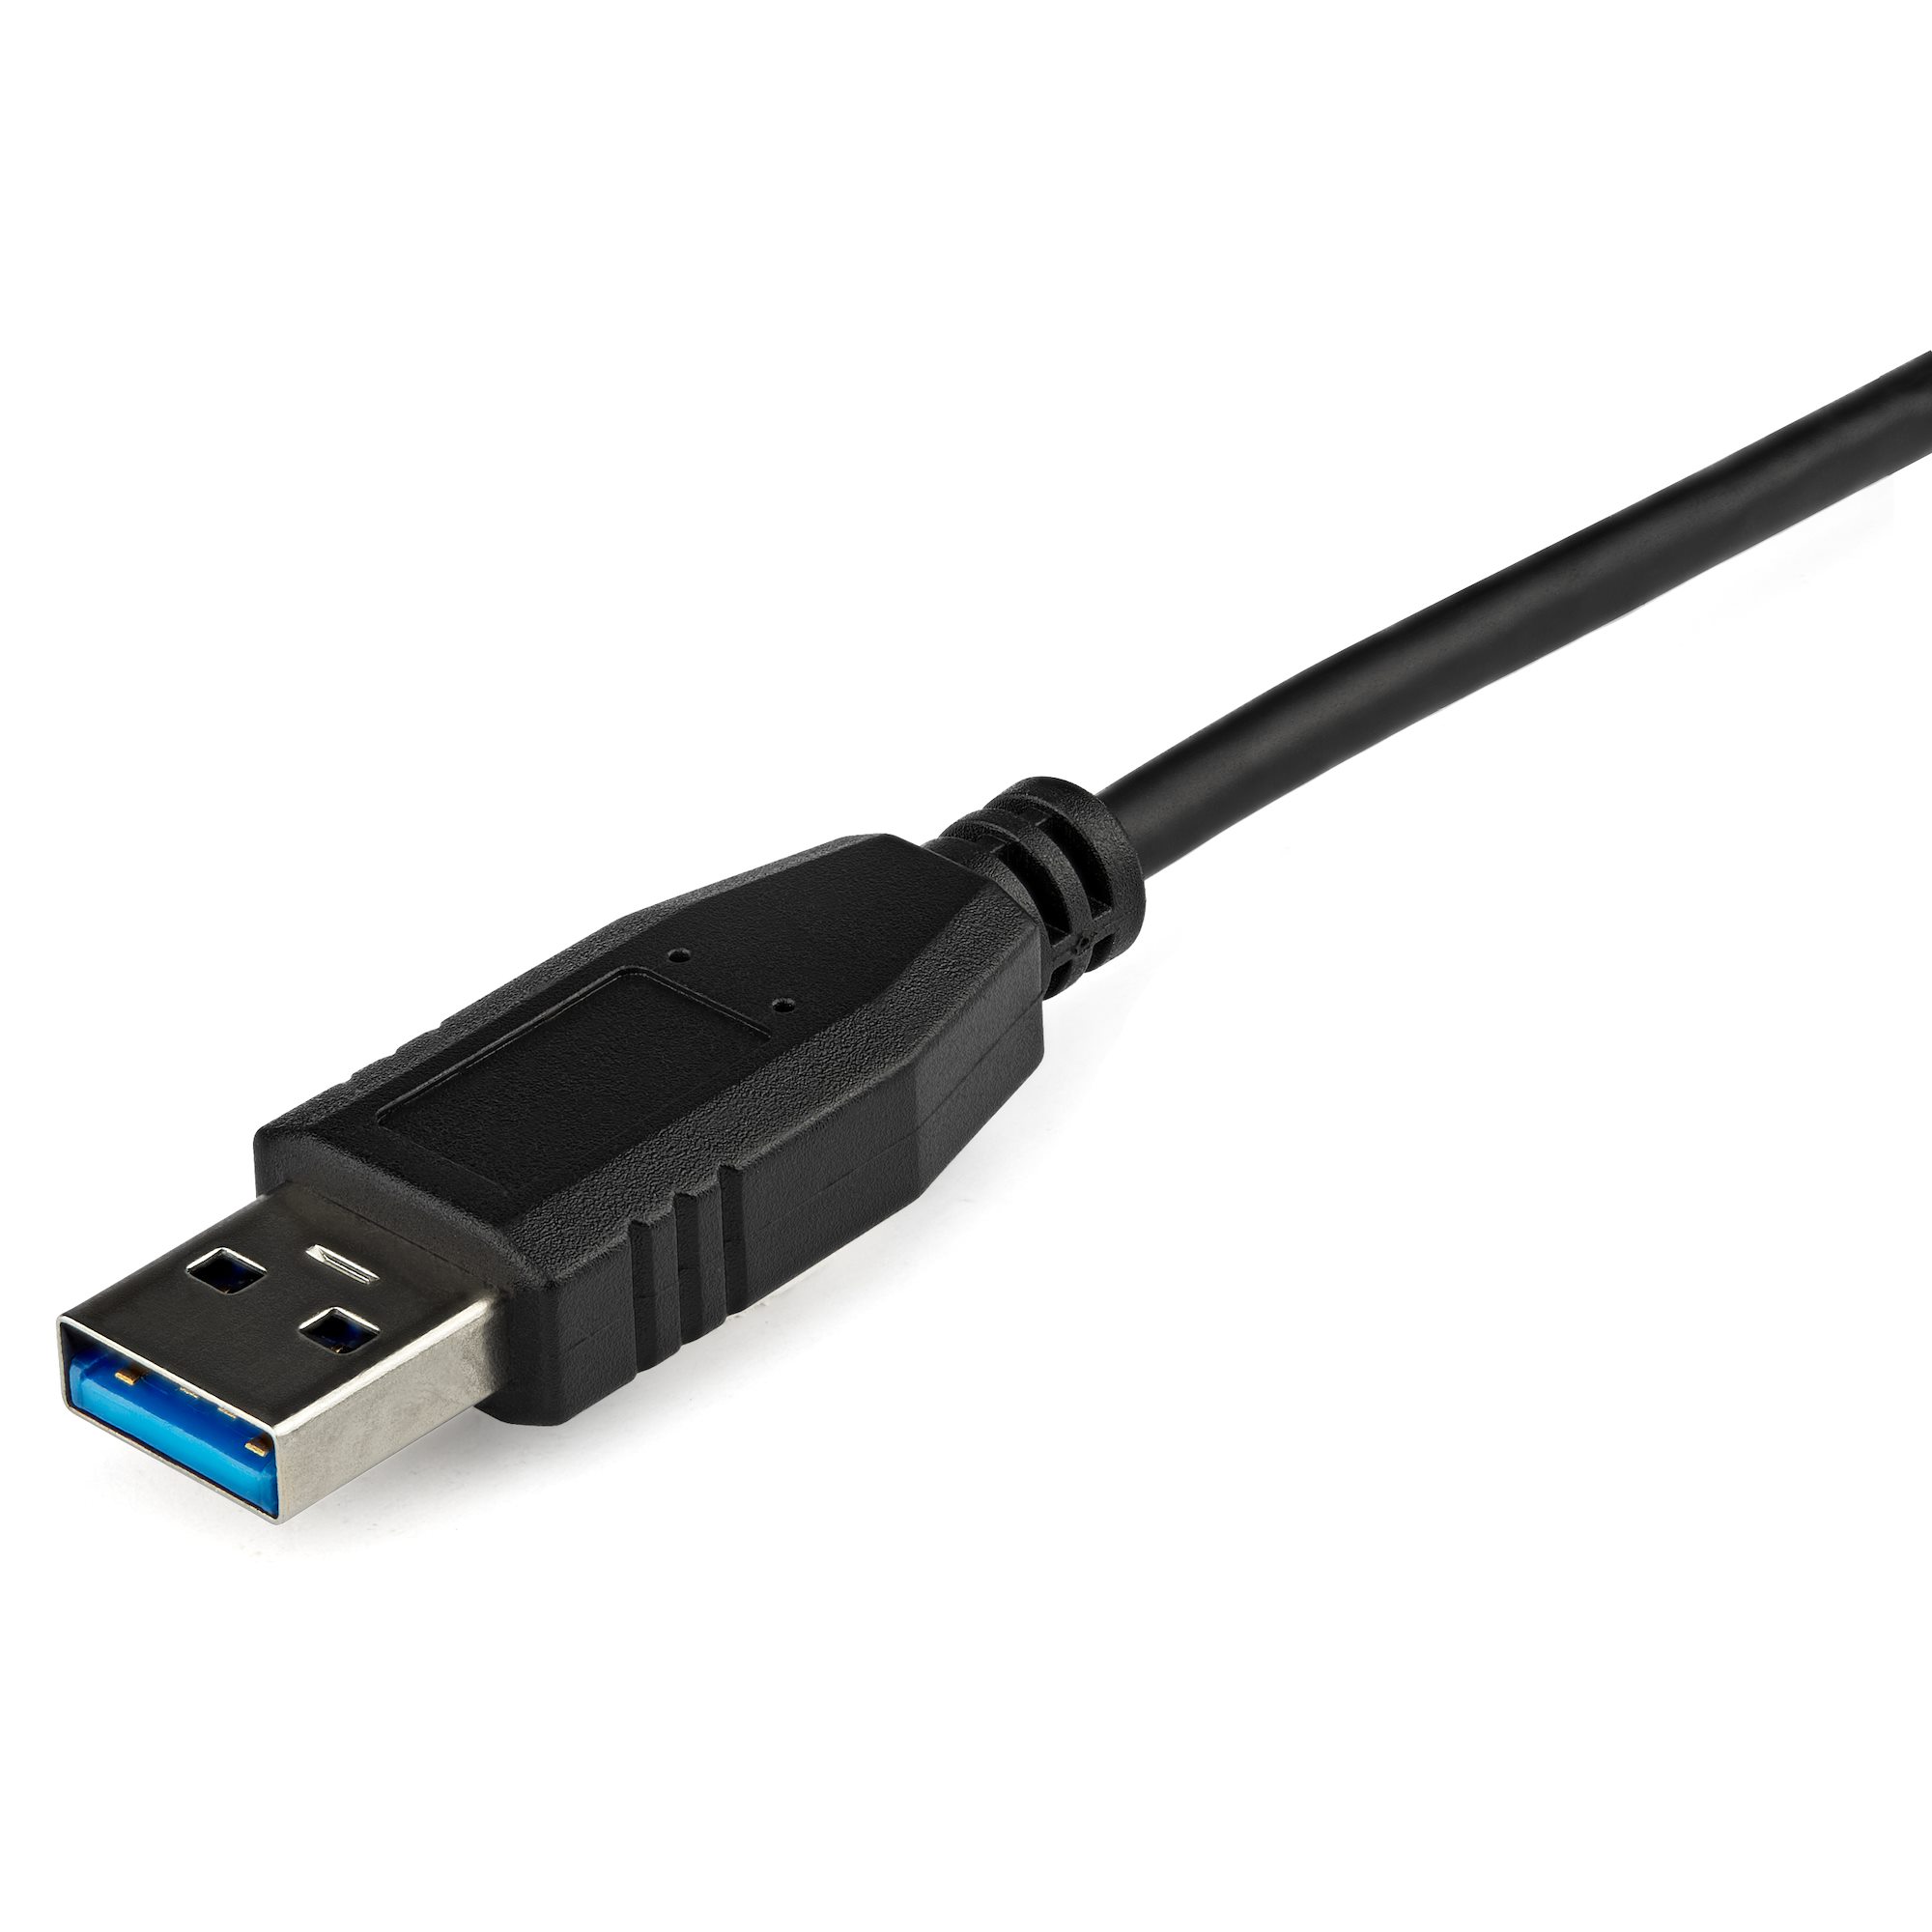 USB 3.0 to Gigabit Ethernet Adapter - USB  USB-C ネットワークアダプタ  日本